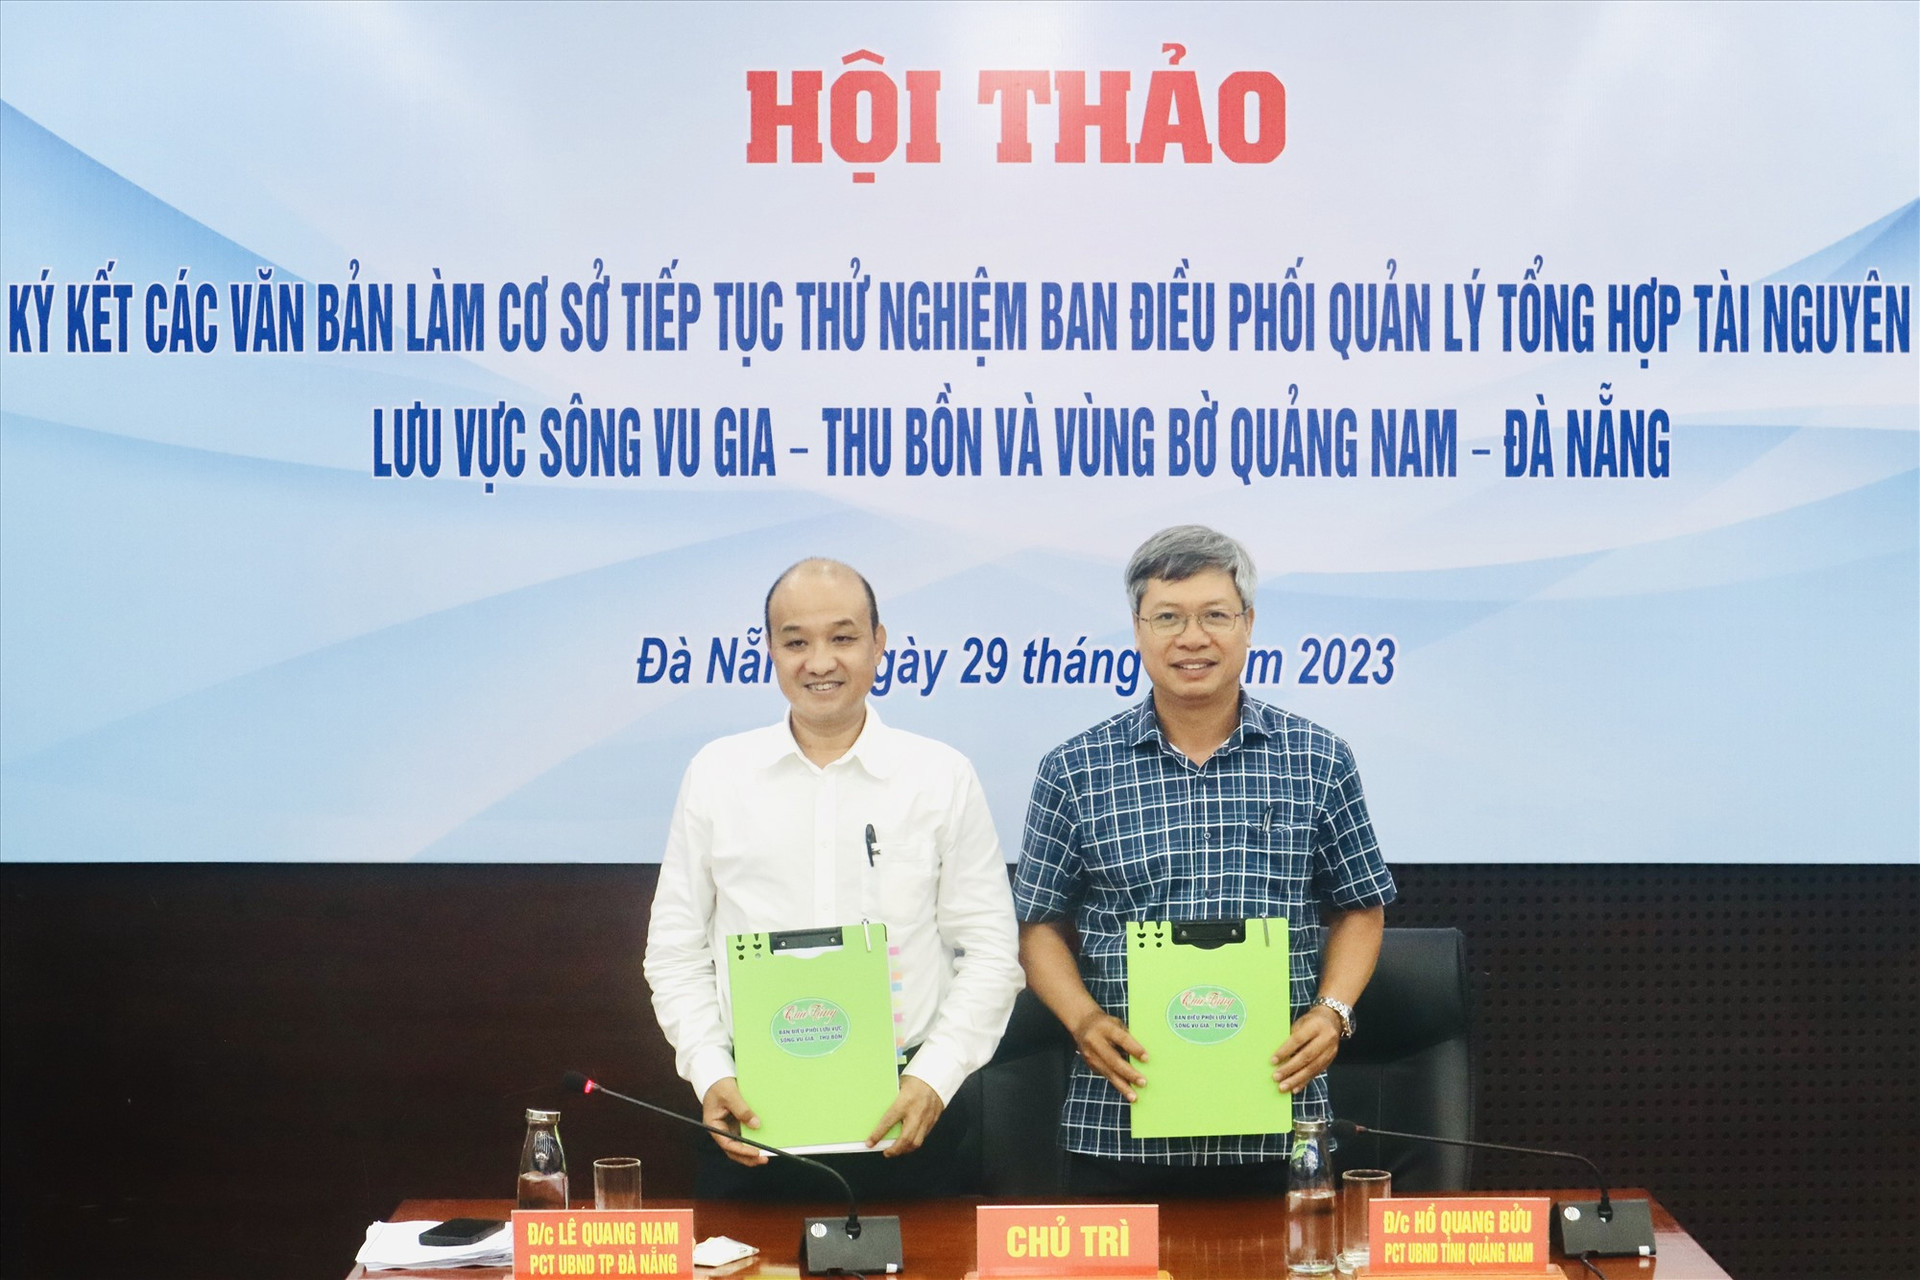 Lãnh đạo UBND tỉnh Quảng Nam và TP.Đà Nẵng ký kết thỏa thuận hợp tác quản lý tổng hợp lưu vực sông VG - TB và vùng bờ Quảng Nam - Đà Nẵng. Ảnh: Q.T